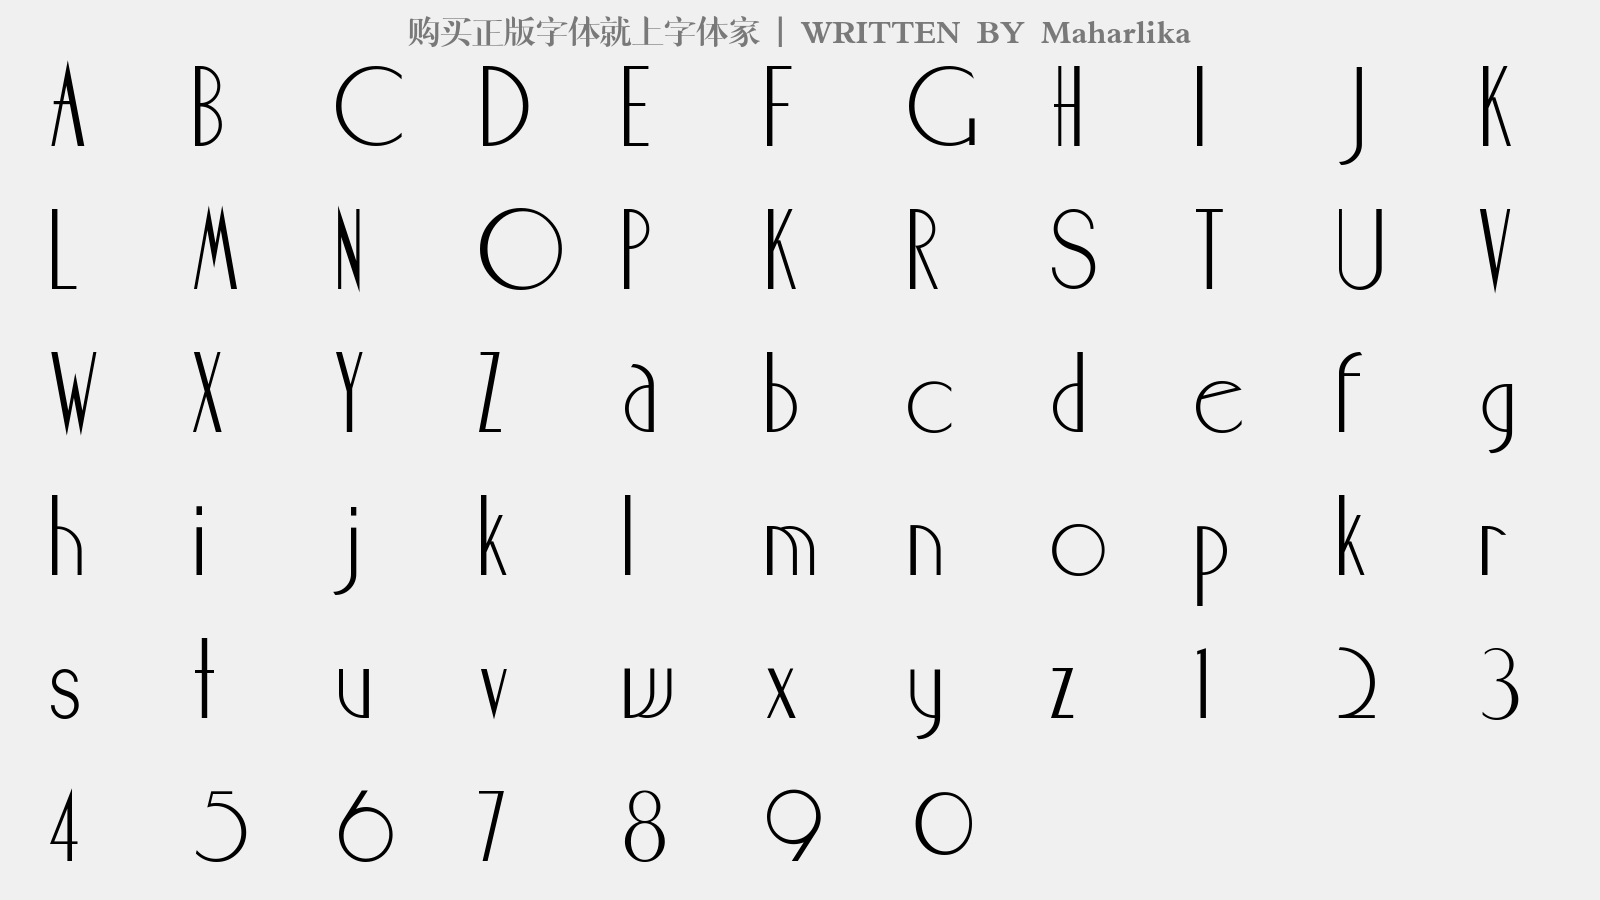 Maharlika - 大写字母/小写字母/数字